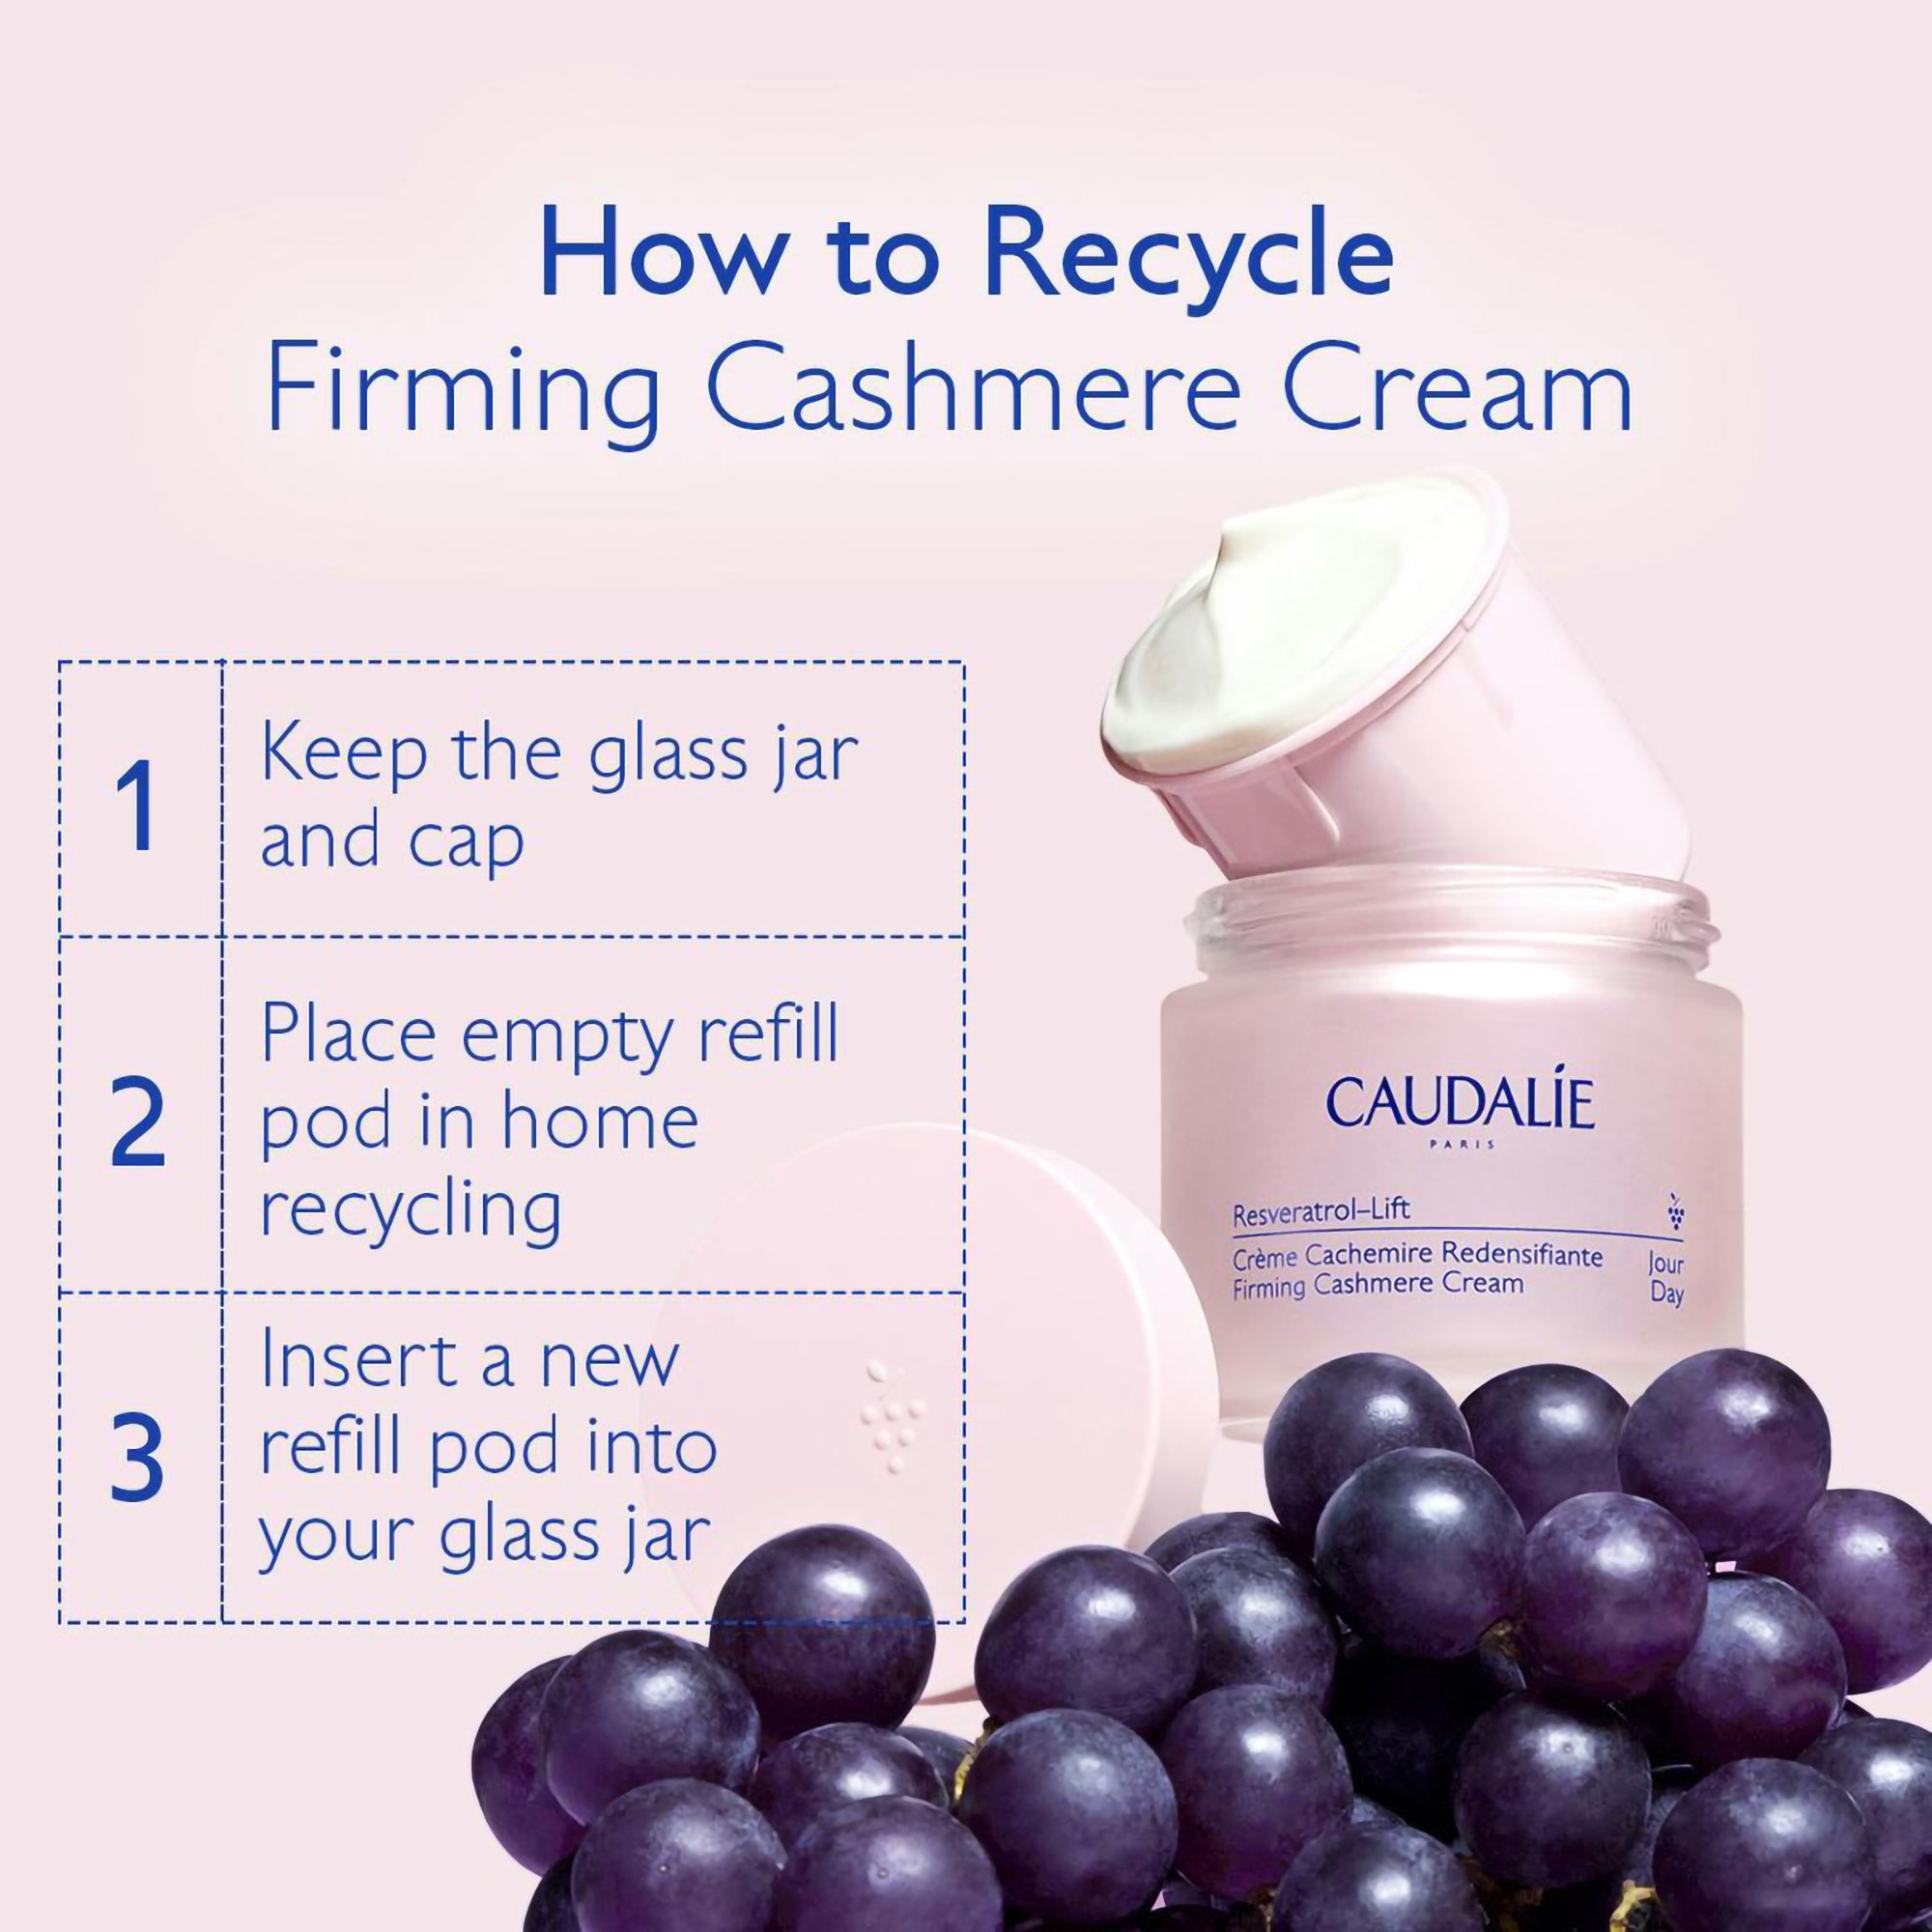 Caudalie Resveratrol-Lift Cashmere Cream Refill / 1.6OZ